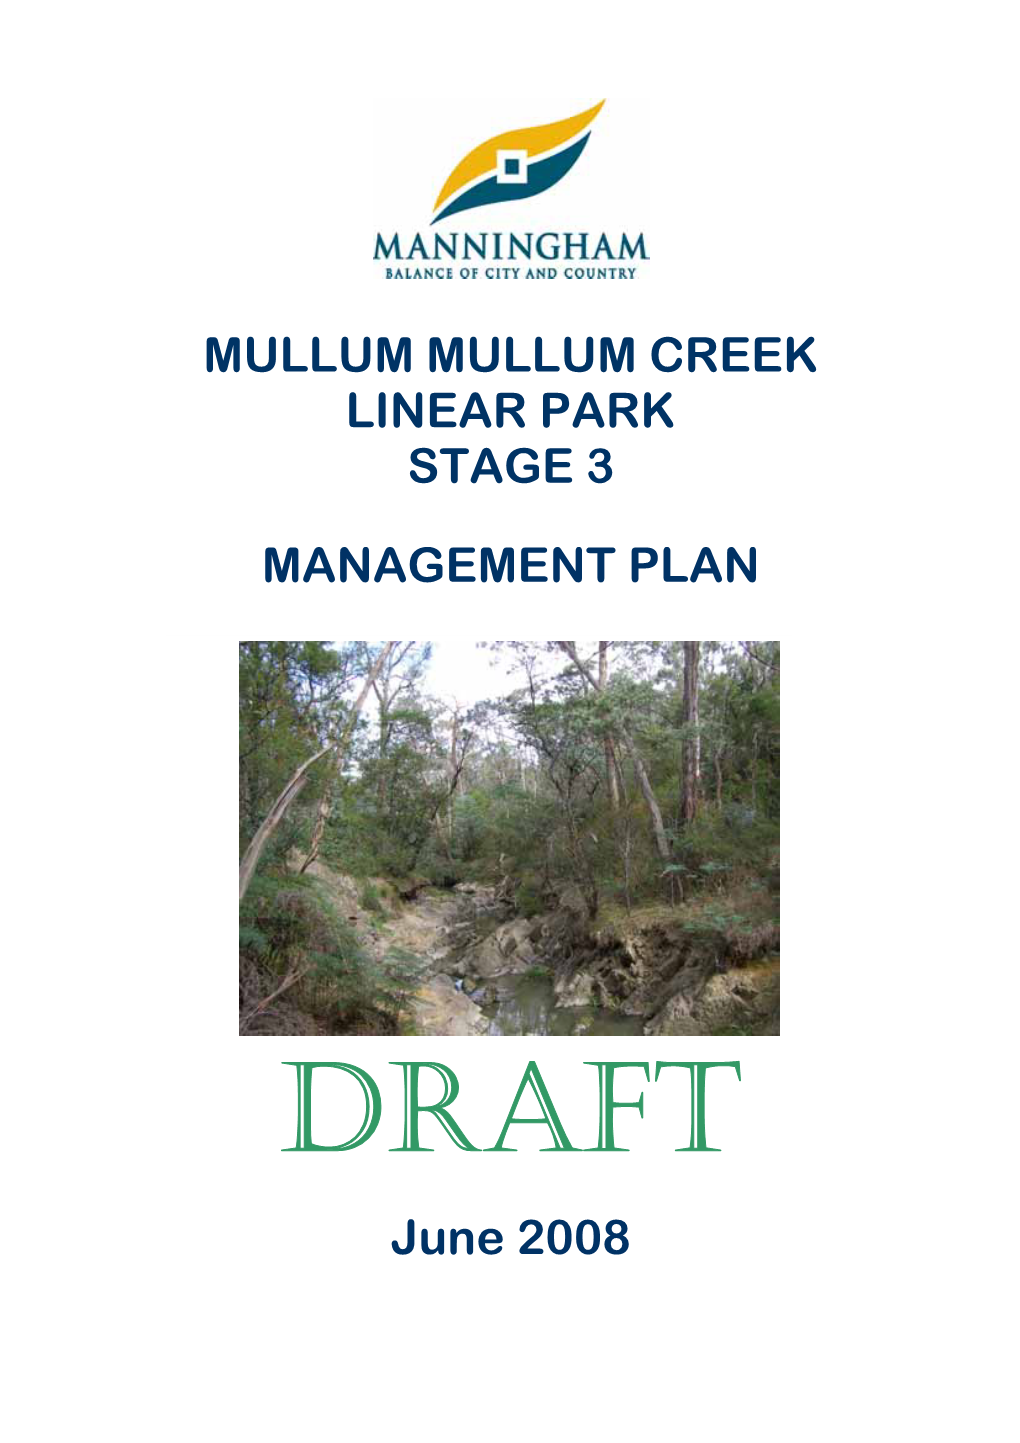 Mullum Mullum Creek Linear Park Management Plan 2008